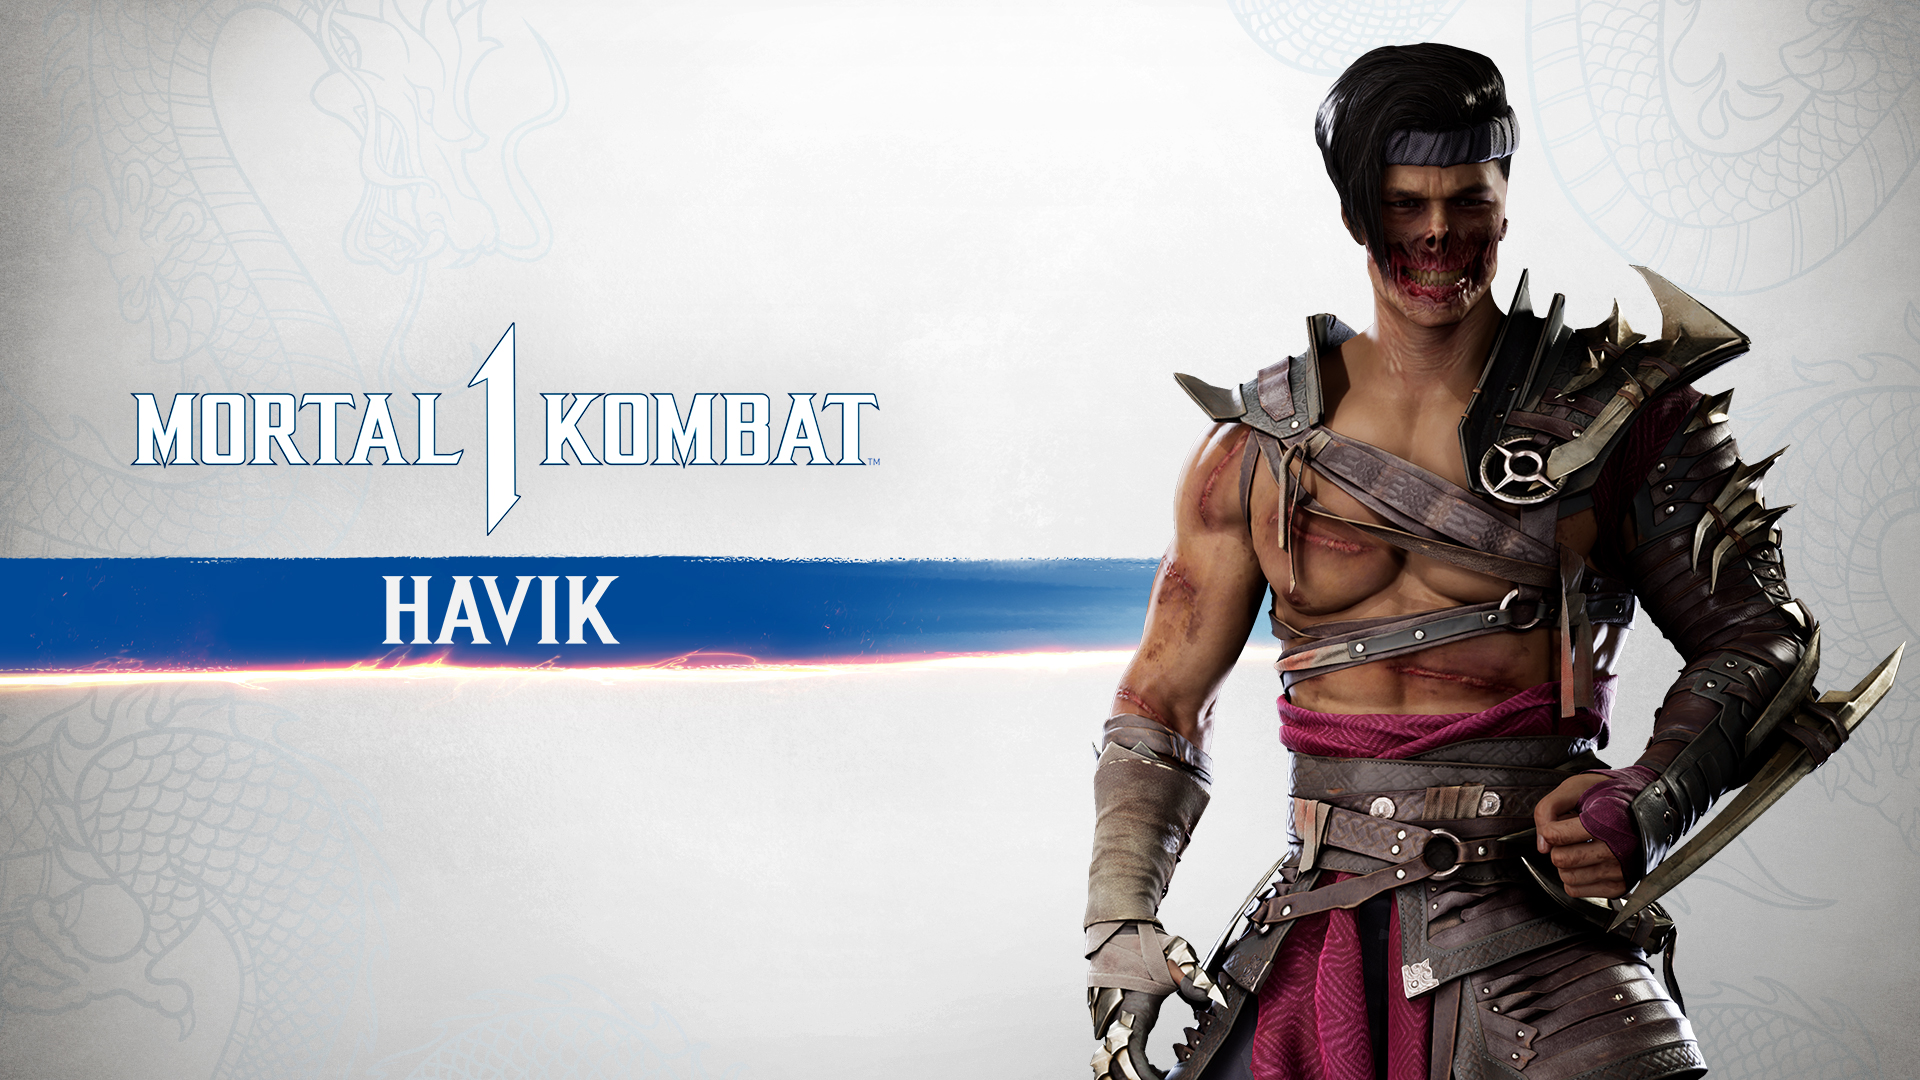 MK1: Havik